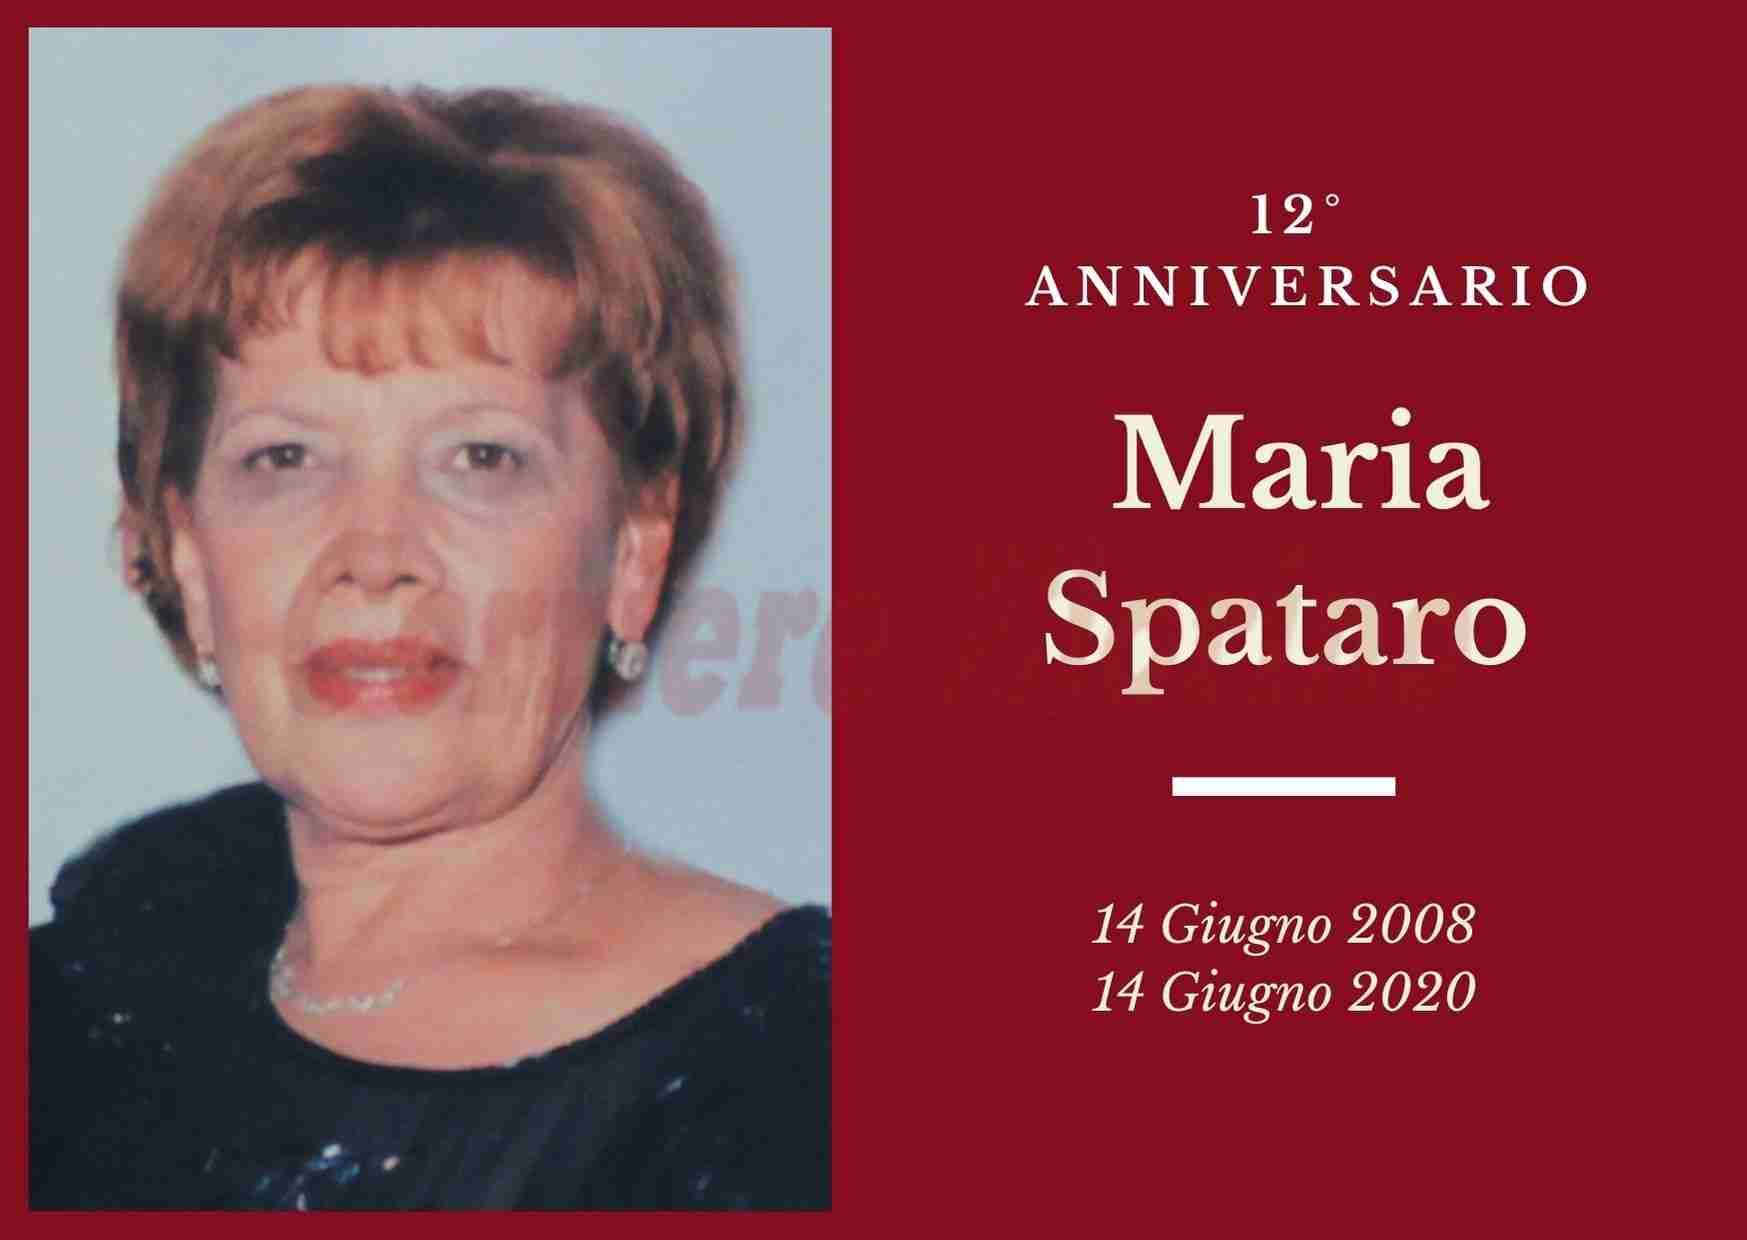 Necrologio: ricorre oggi il 12° Anniversario di Maria Spataro